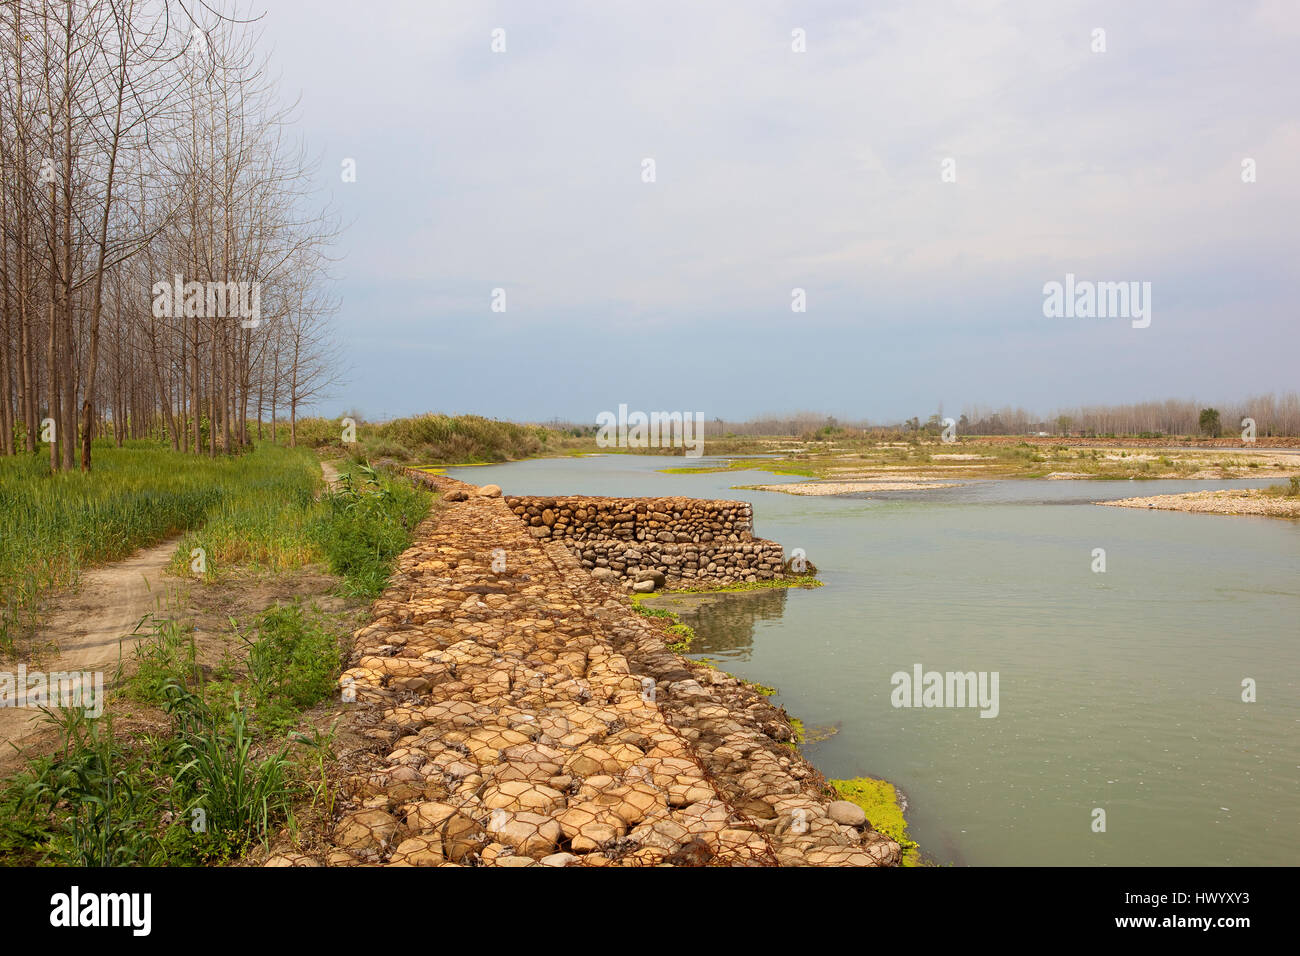 Un banco de piedra de río punjabi con cultivos de trigo y chopos bajo un cielo nublado azul Foto de stock